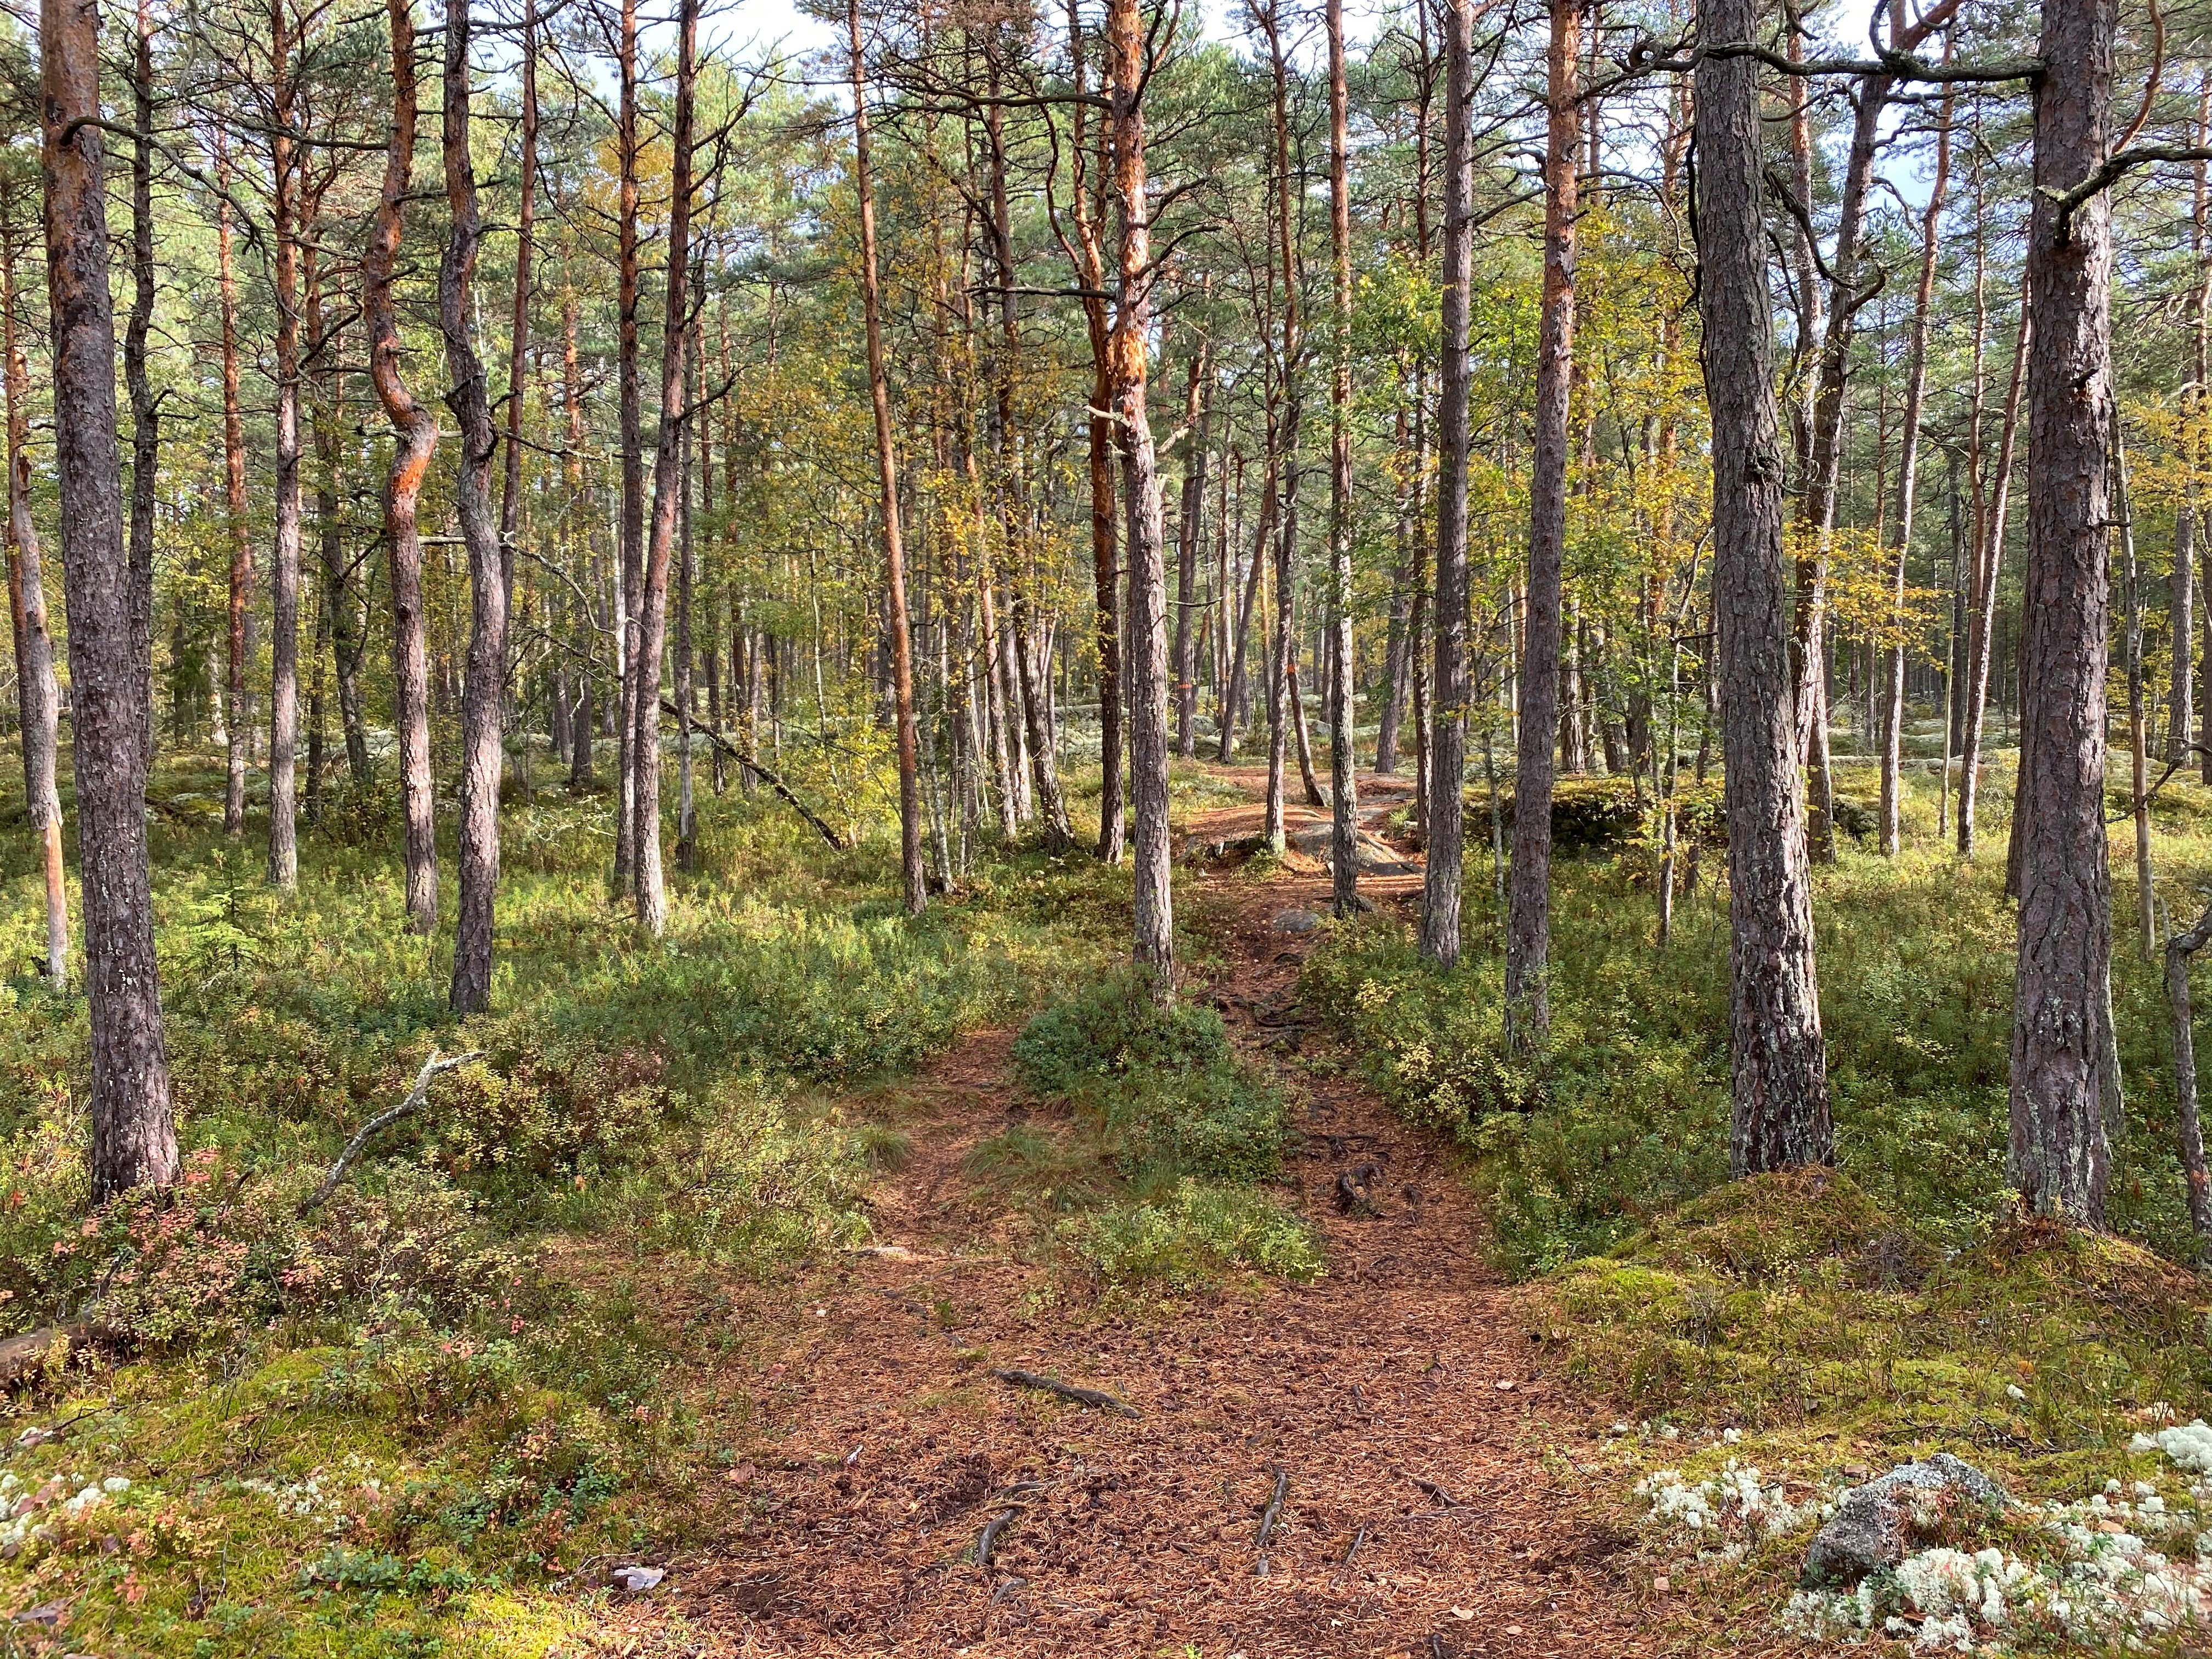 En något ojämn stig går igenom gles skog med många tallar.